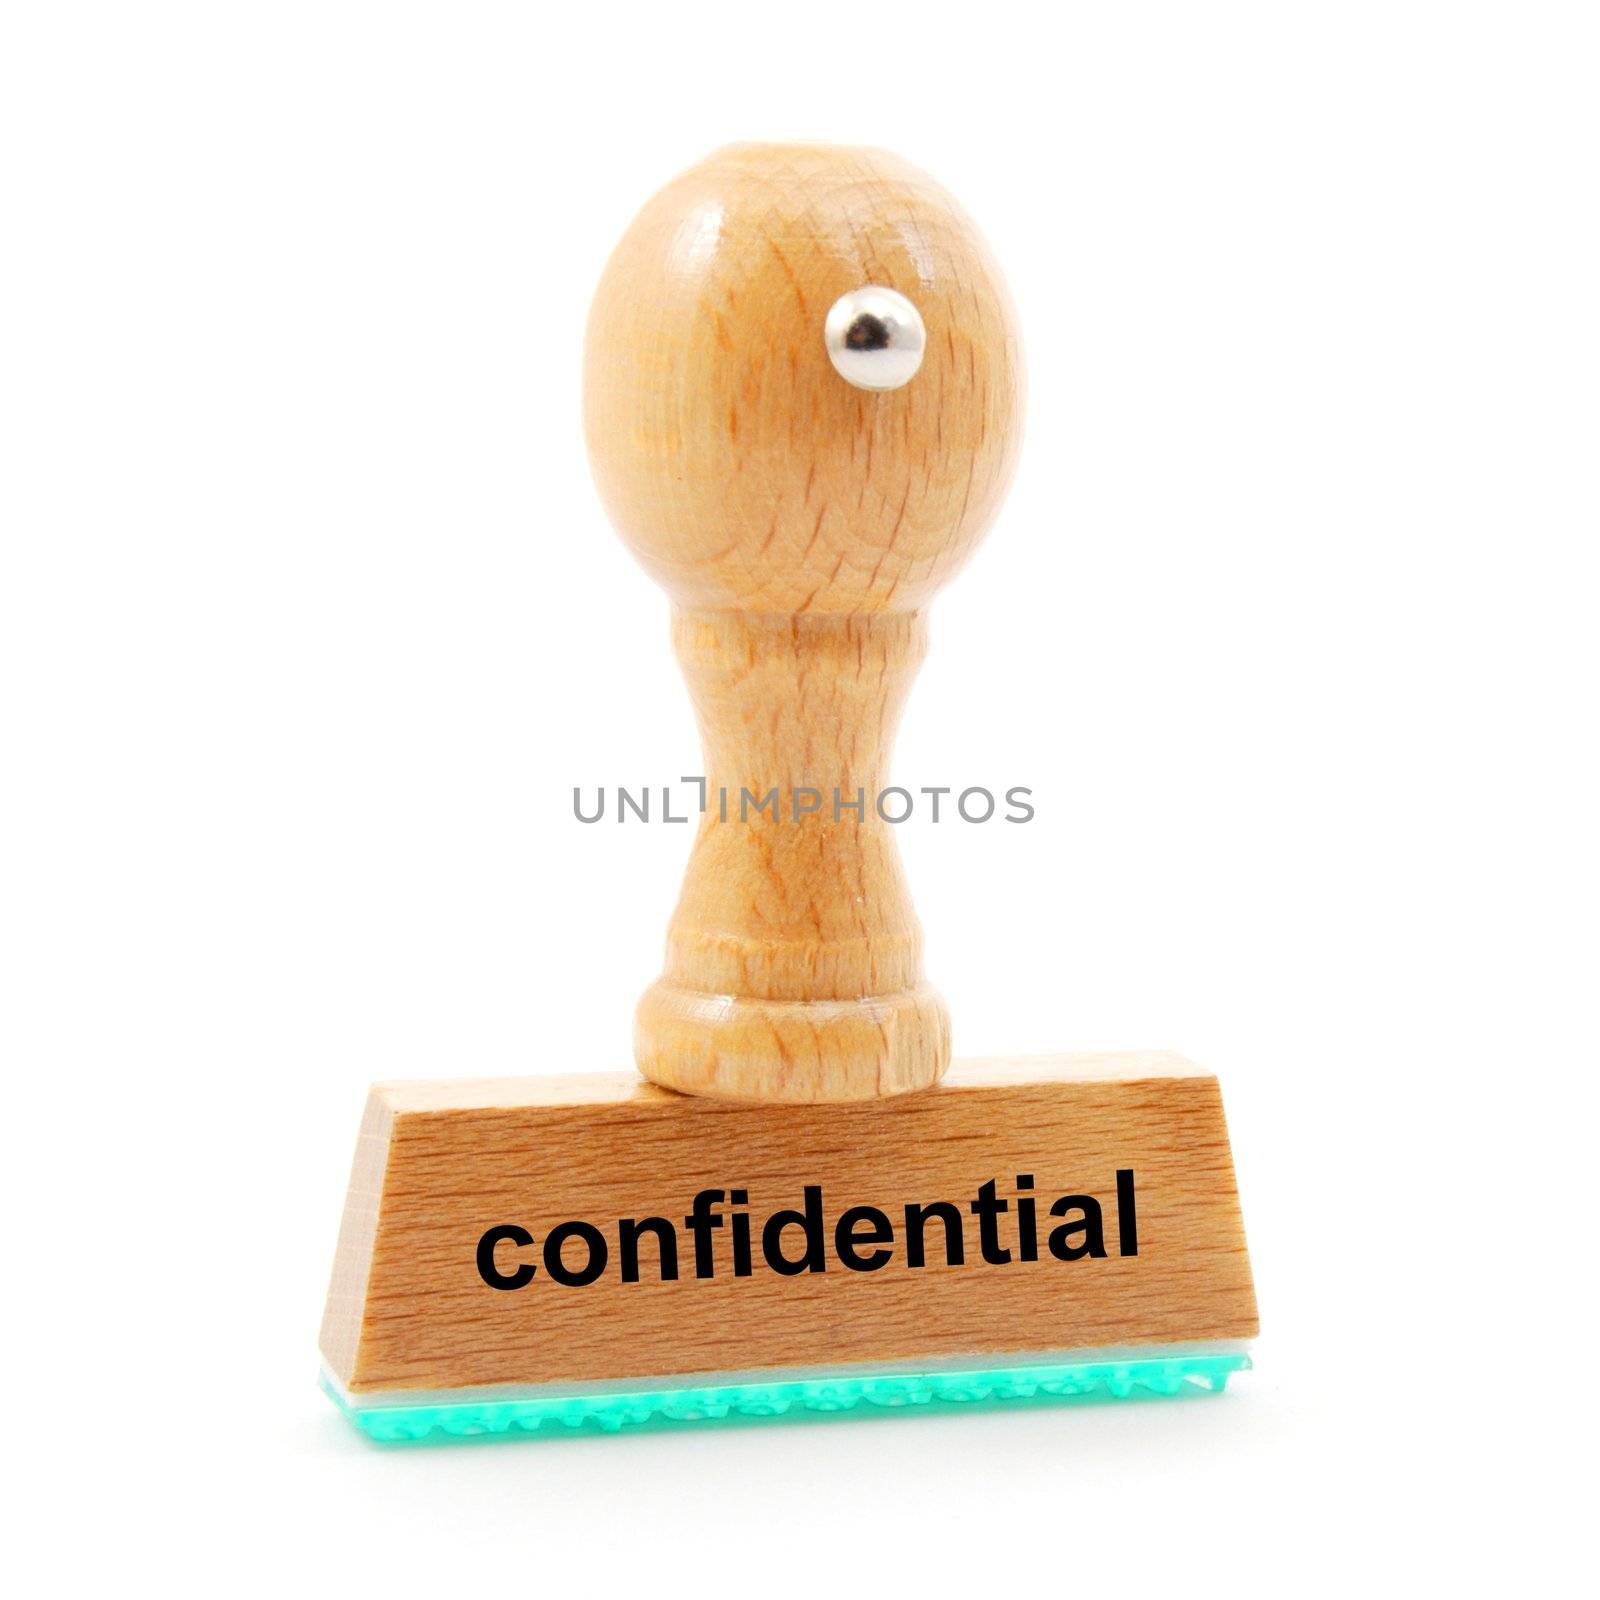 confidential by gunnar3000